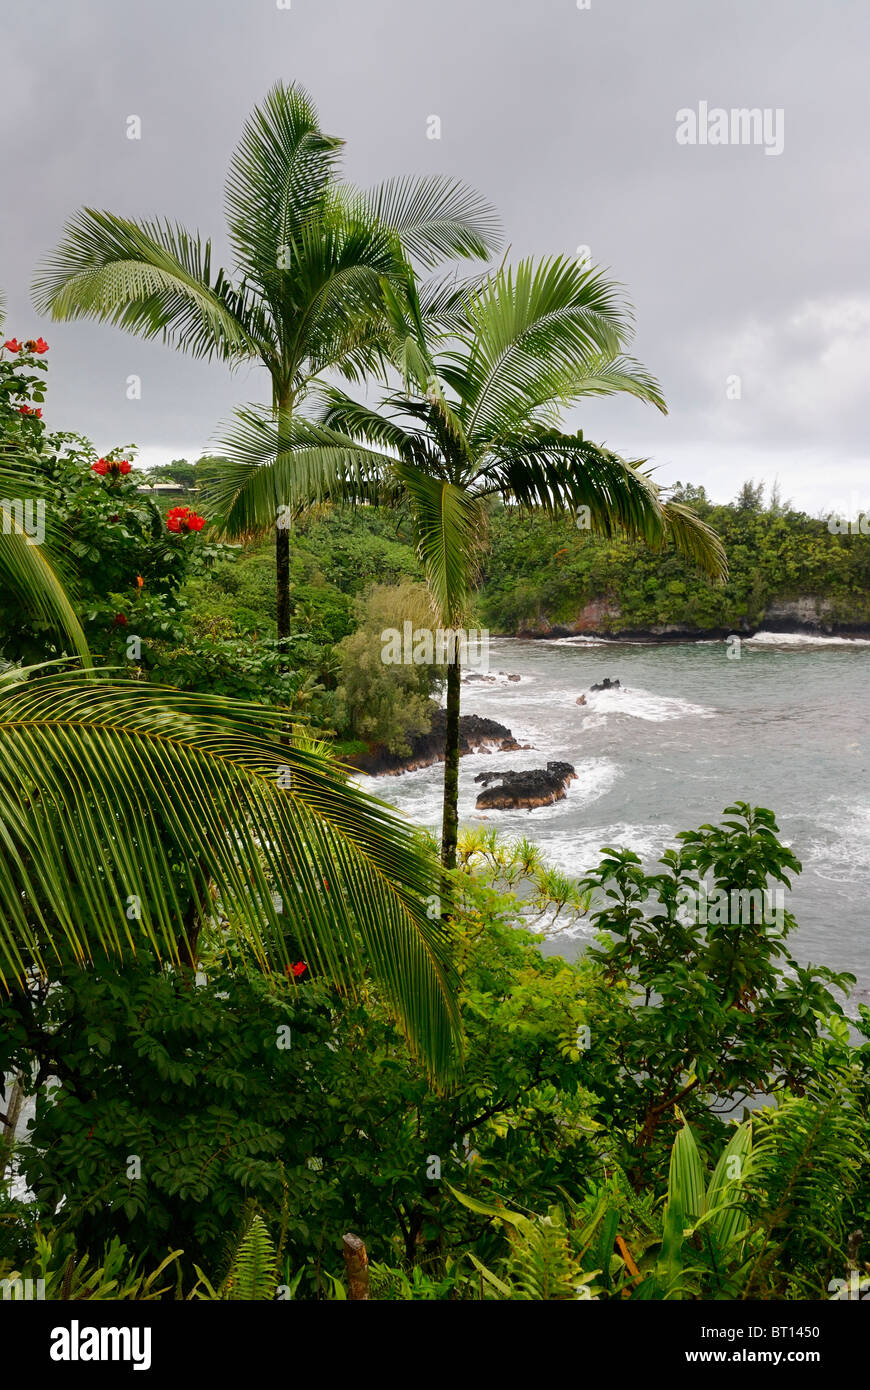 Onomea Bay near Hawaii Tropical Botanical Garden in Hilo, Big Island, Hawaii, USA. Stock Photo